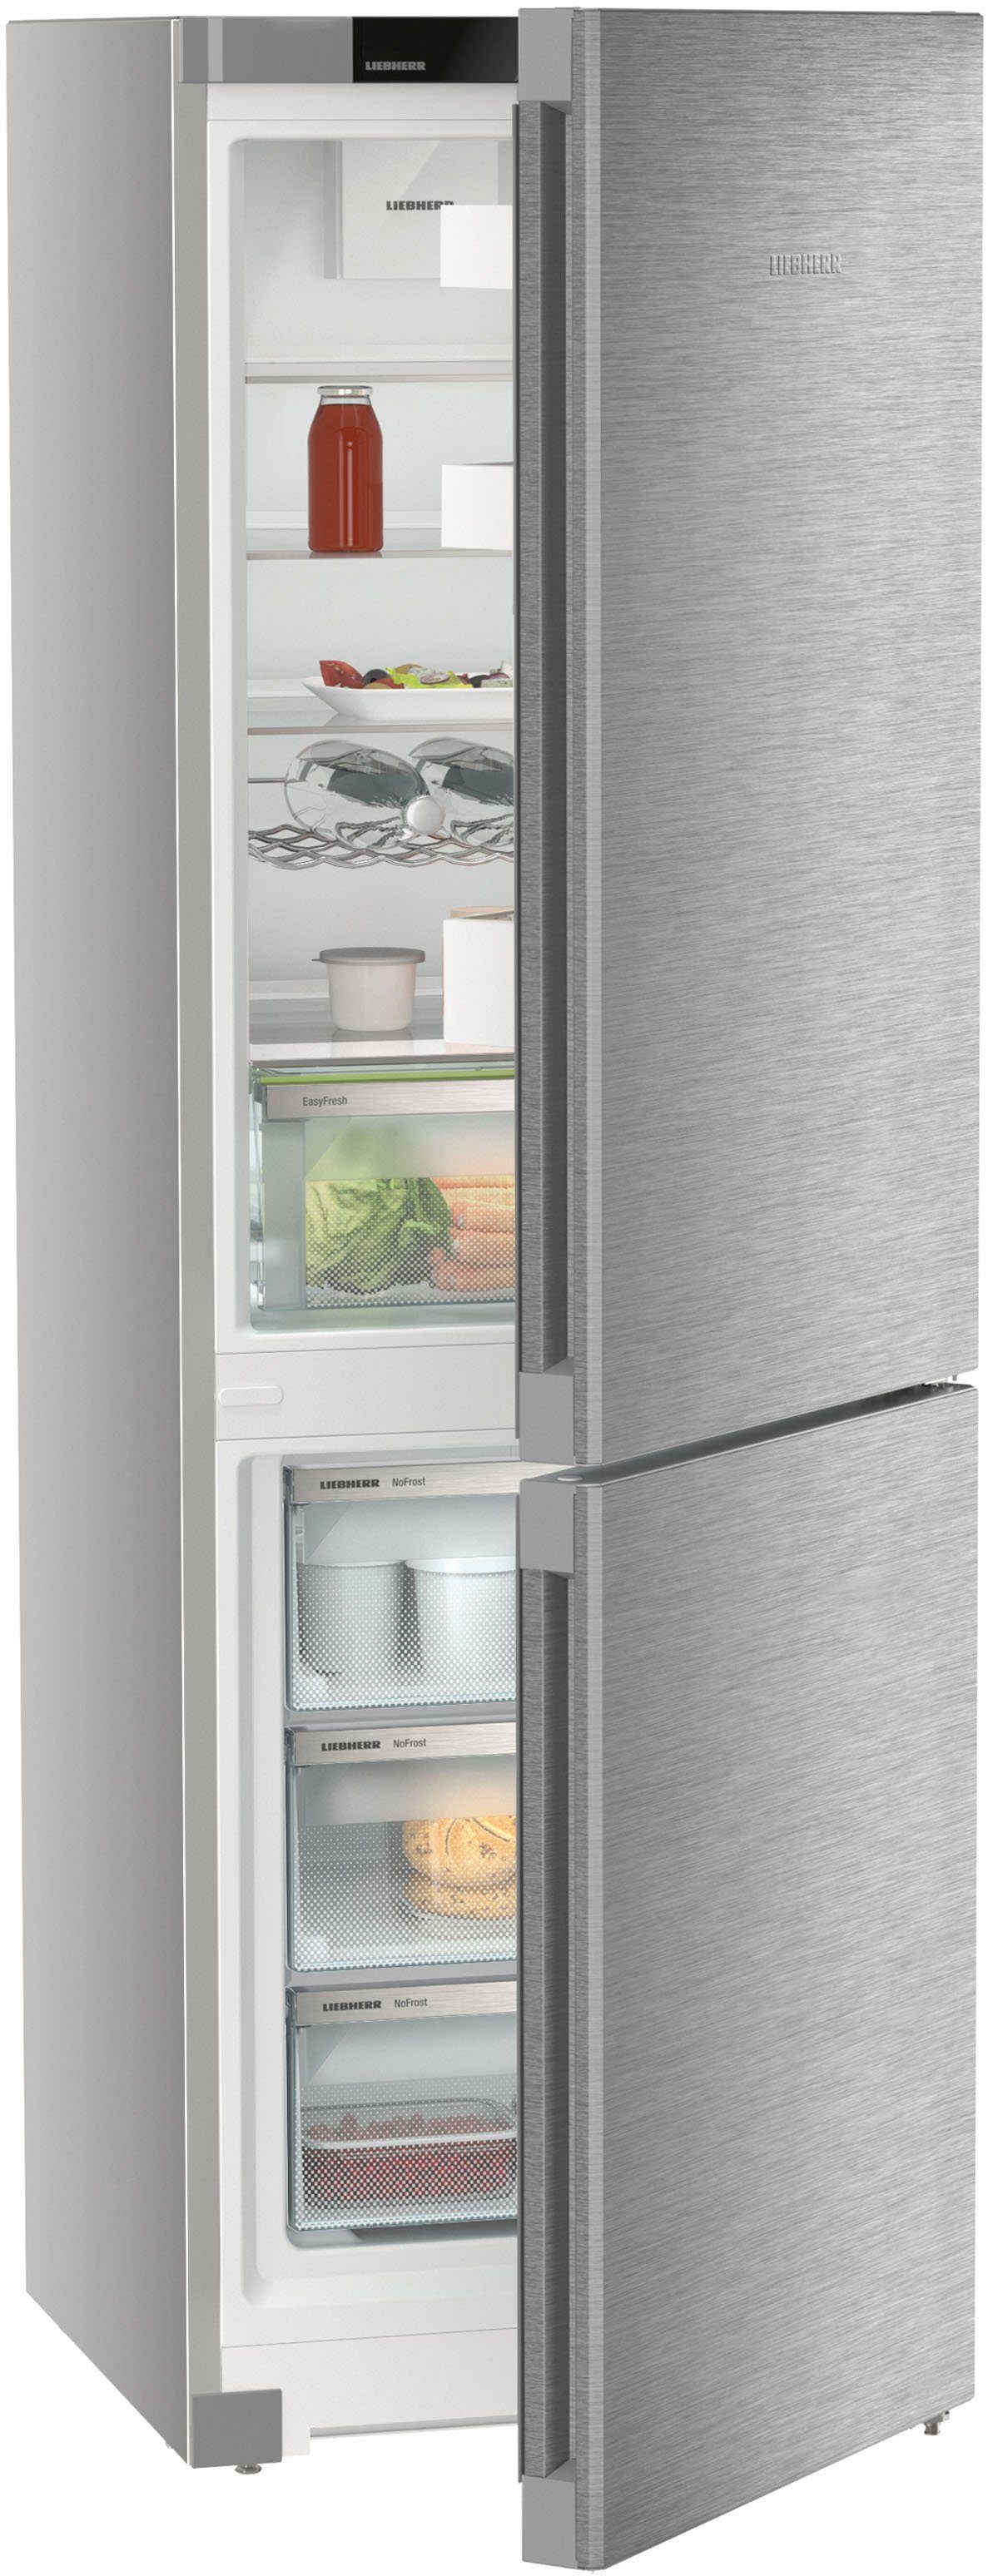 Kühlschränke online kaufen | OTTO